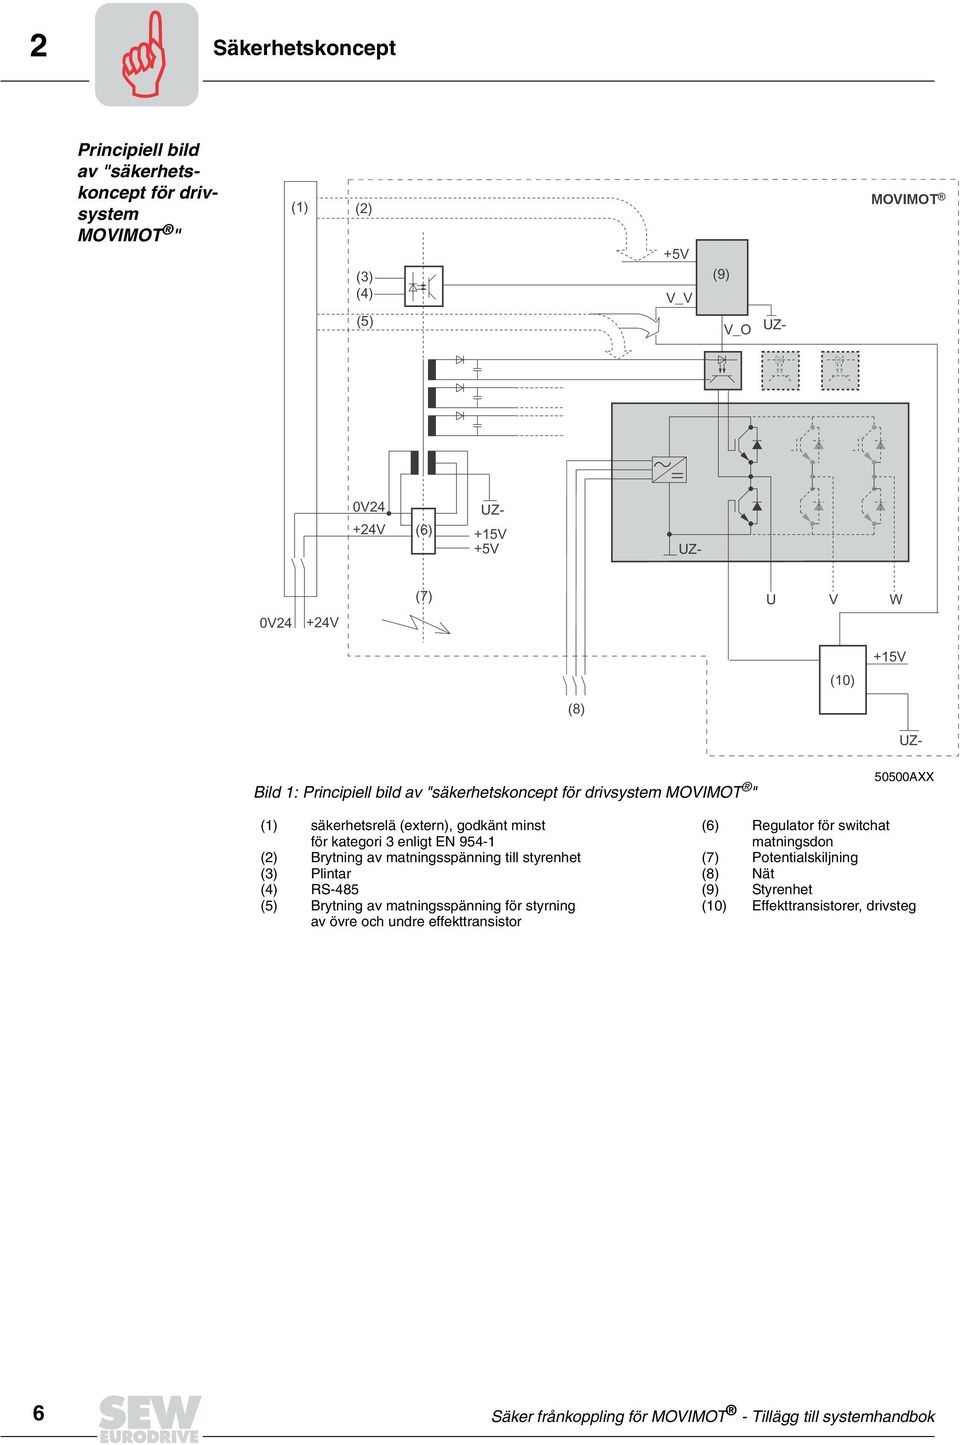 954-1 Brytning av matningsspänning till styrenhet Plintar (4) RS-485 (5) Brytning av matningsspänning för styrning av övre och undre effekttransistor (6)